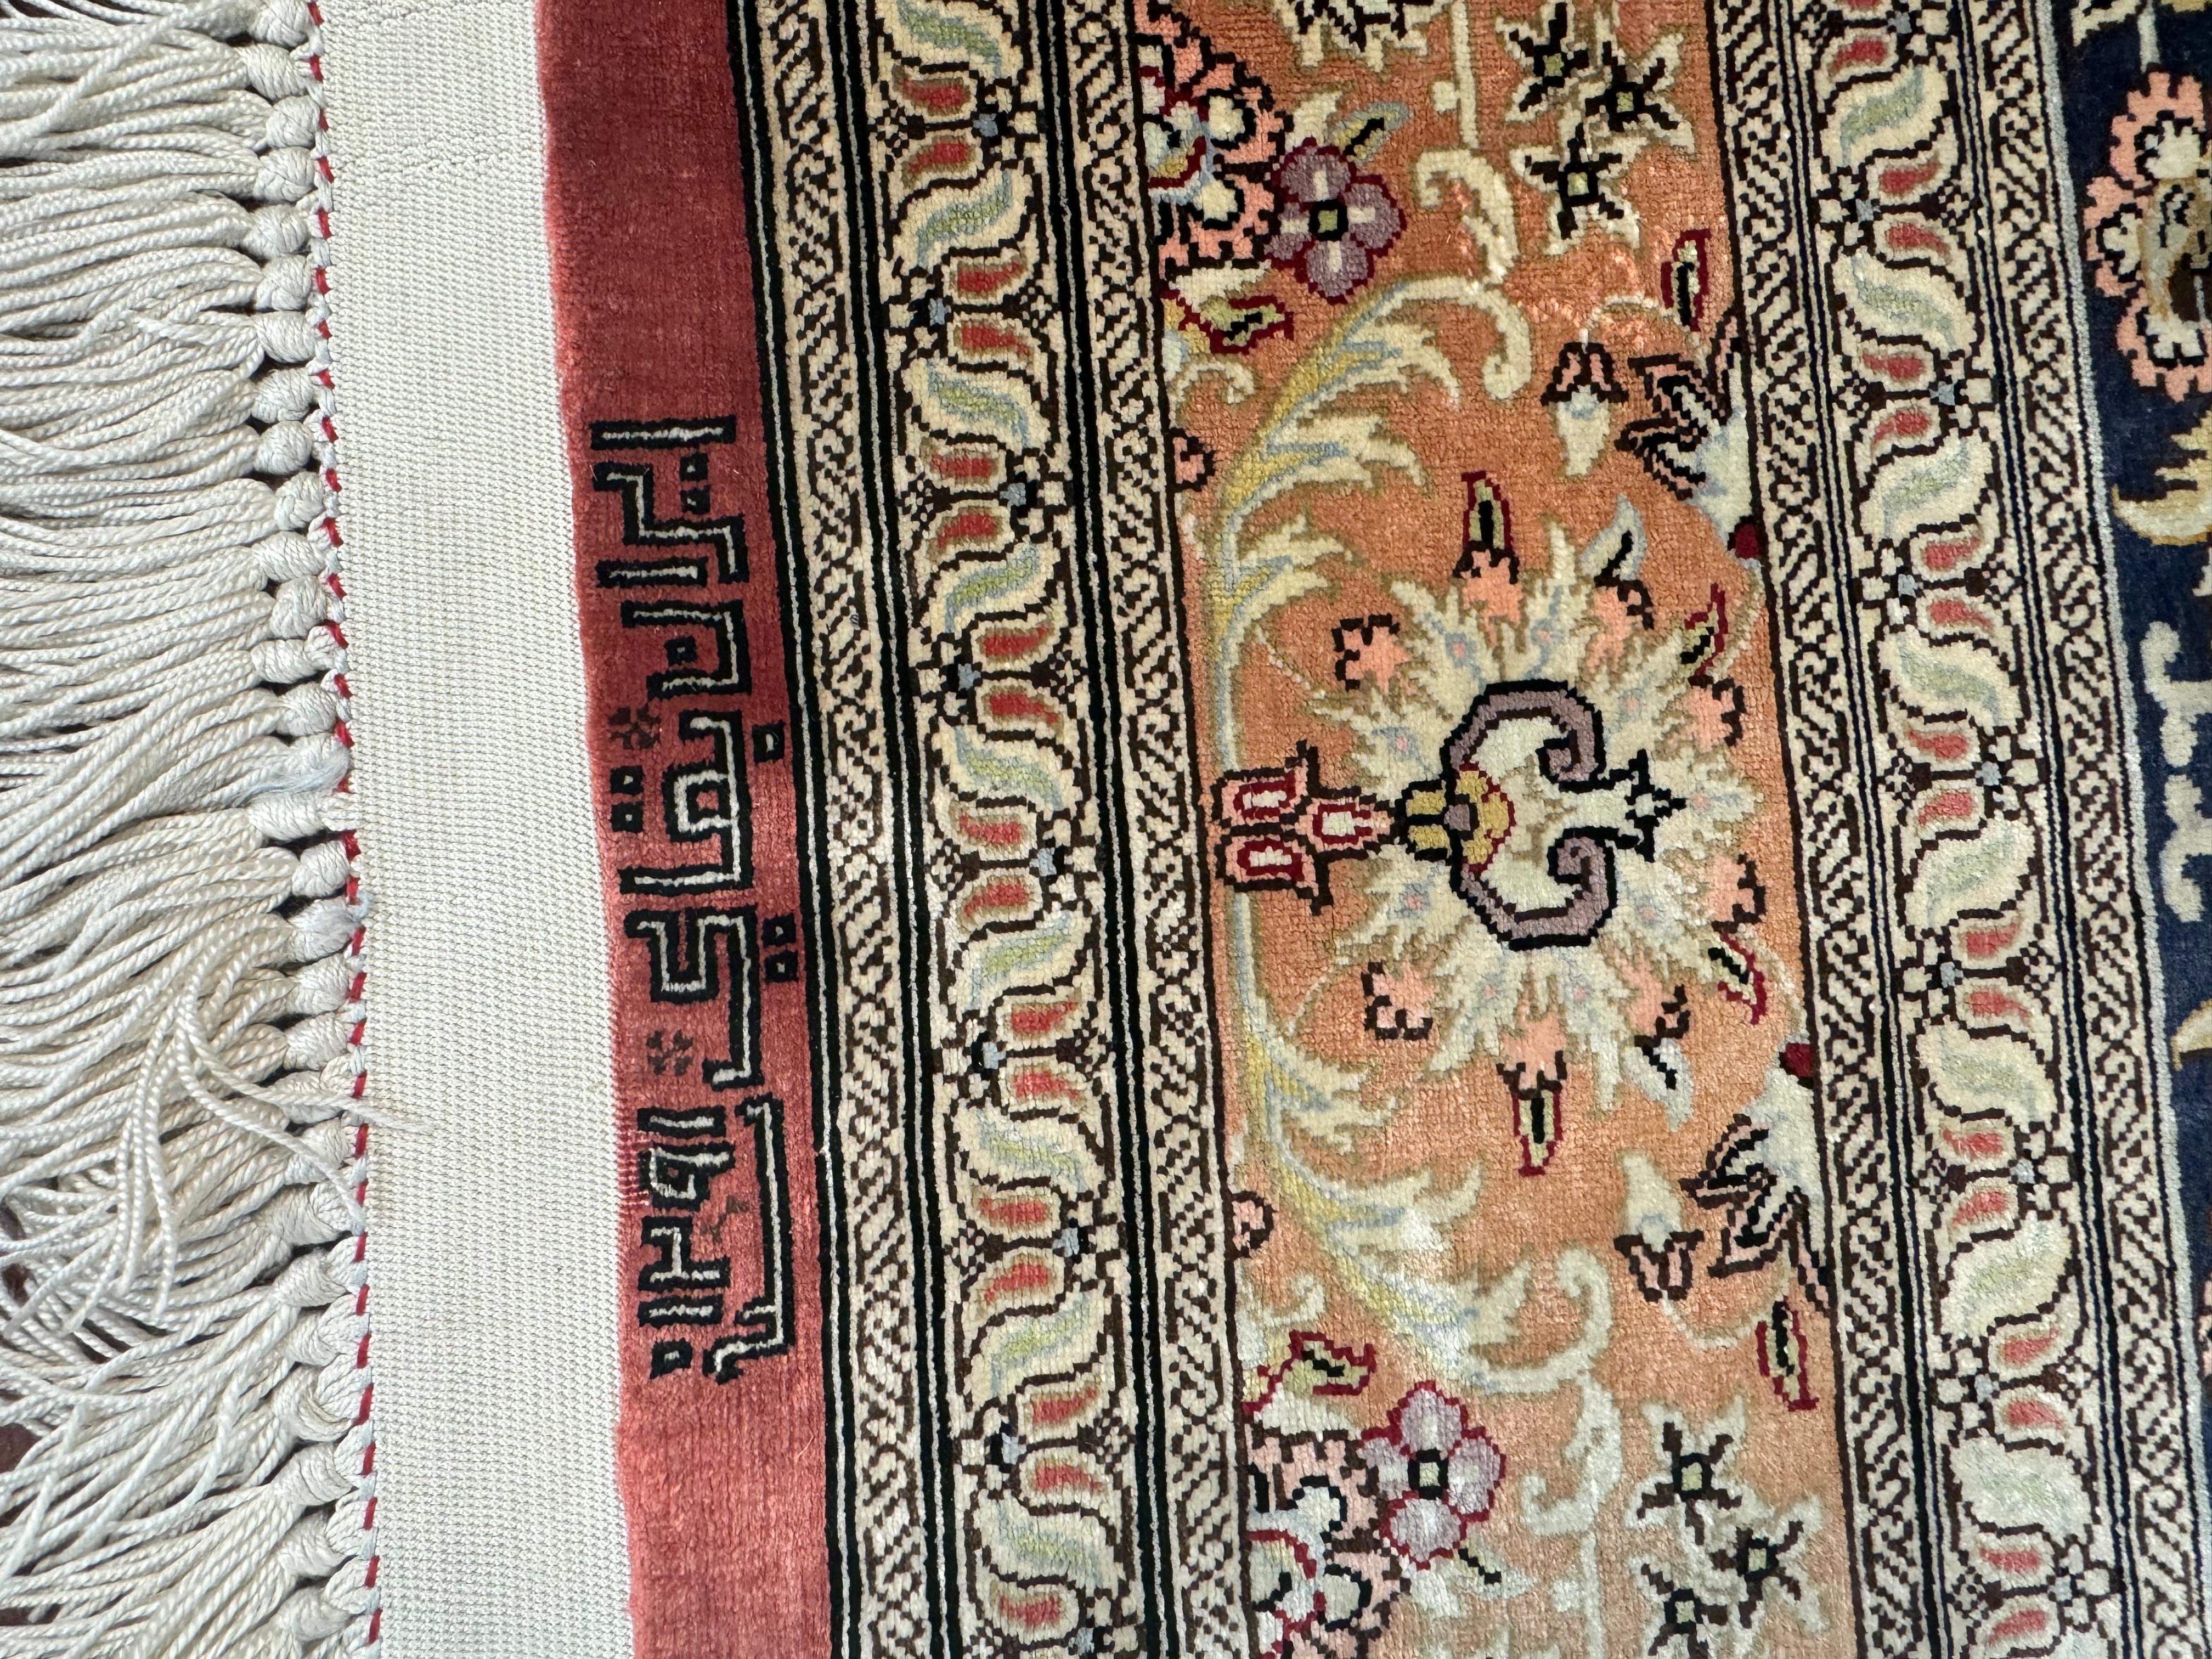 Un superbe tapis persan Qum 100 % soie. Ce tapis provient d'Iran et date de la fin du 20e siècle. Il s'agit d'une pièce exceptionnelle ! Ce tapis est en excellent état compte tenu de sa riche histoire. N'hésitez pas à m'envoyer un message concernant